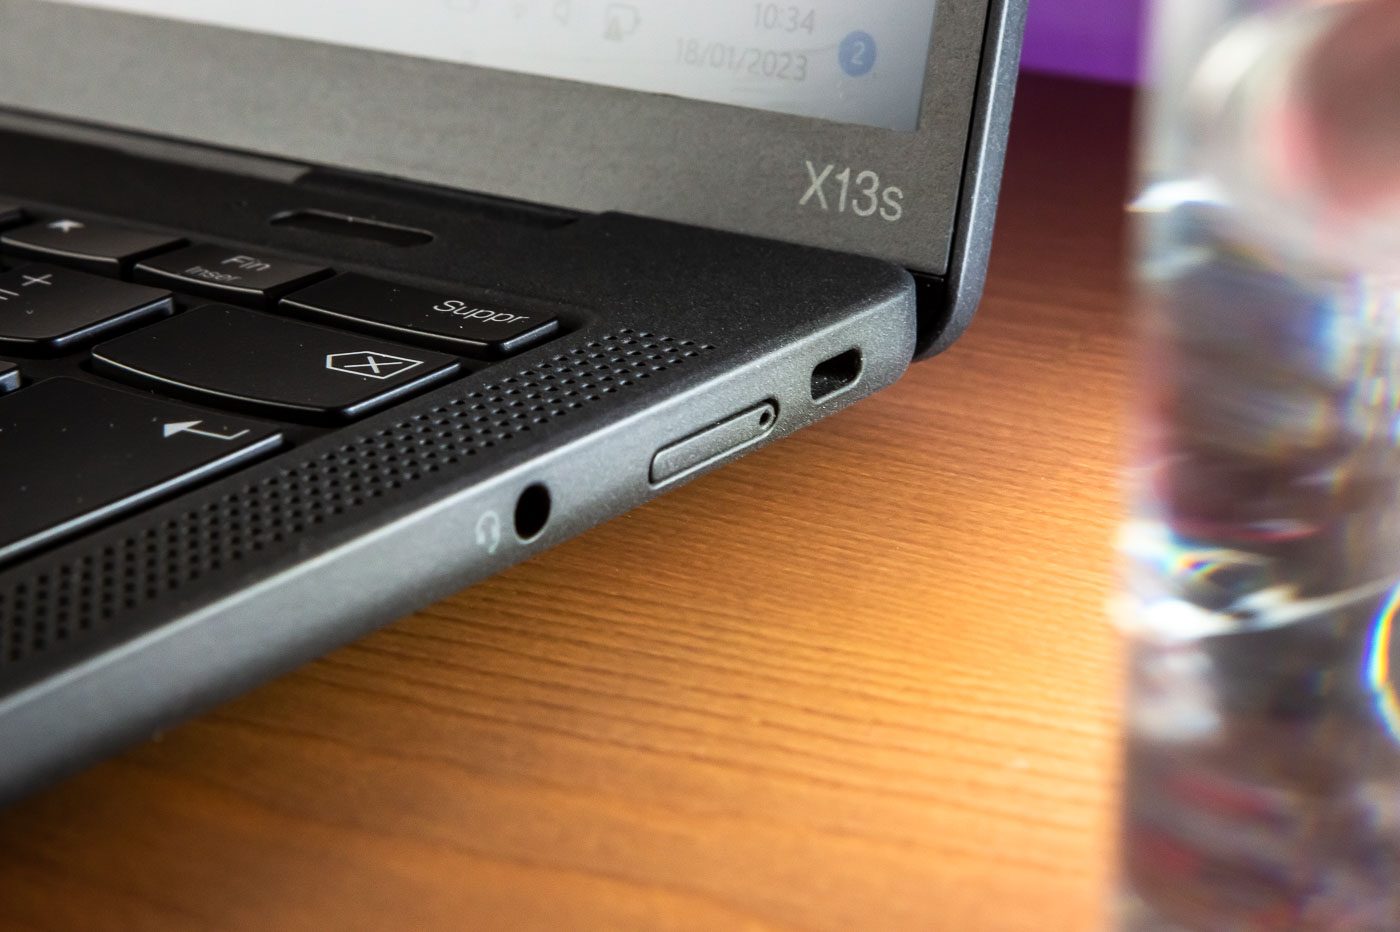 Le ThinkPad X13s embarque un emplacement pour une carte nanoSIM 4G/5G.